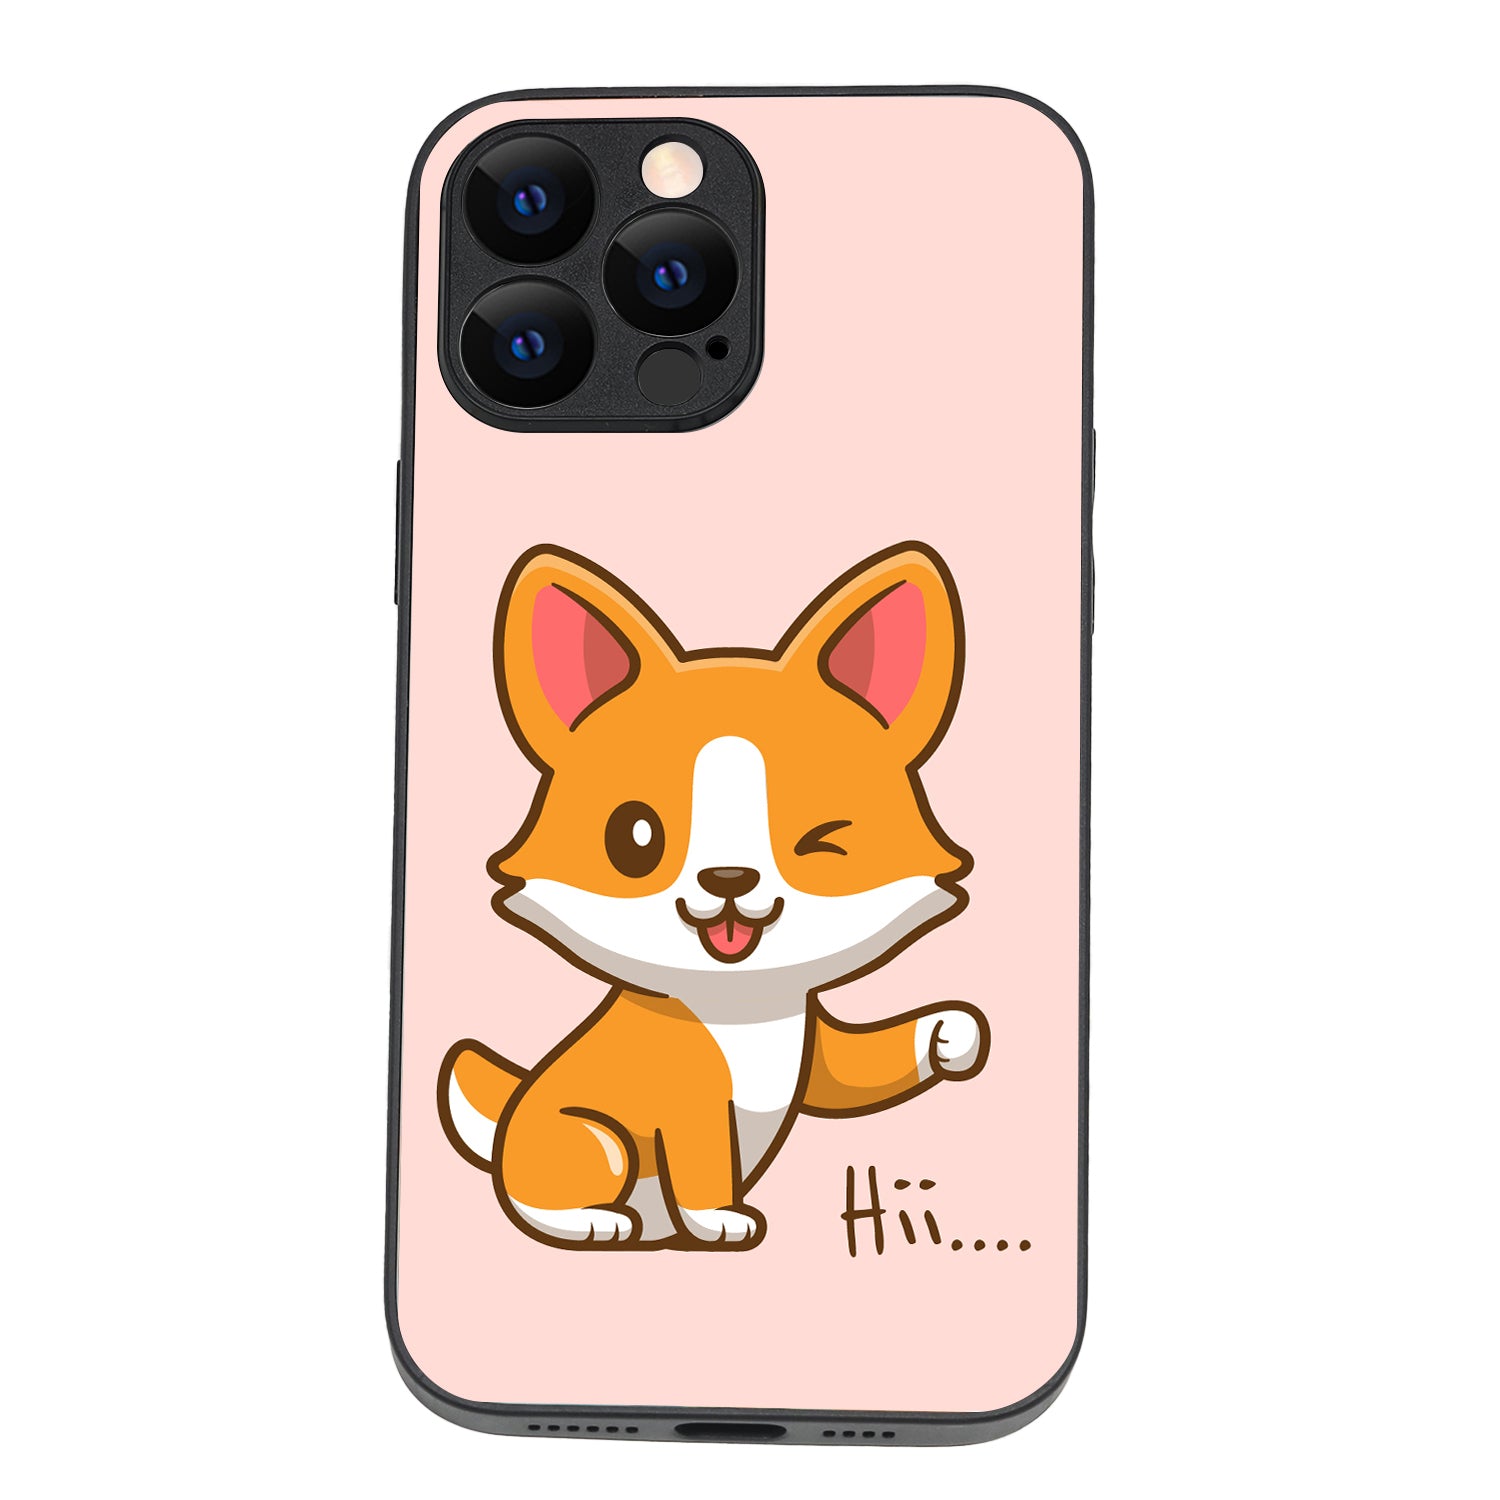 Hi Cute Bff iPhone 13 Pro Max Case